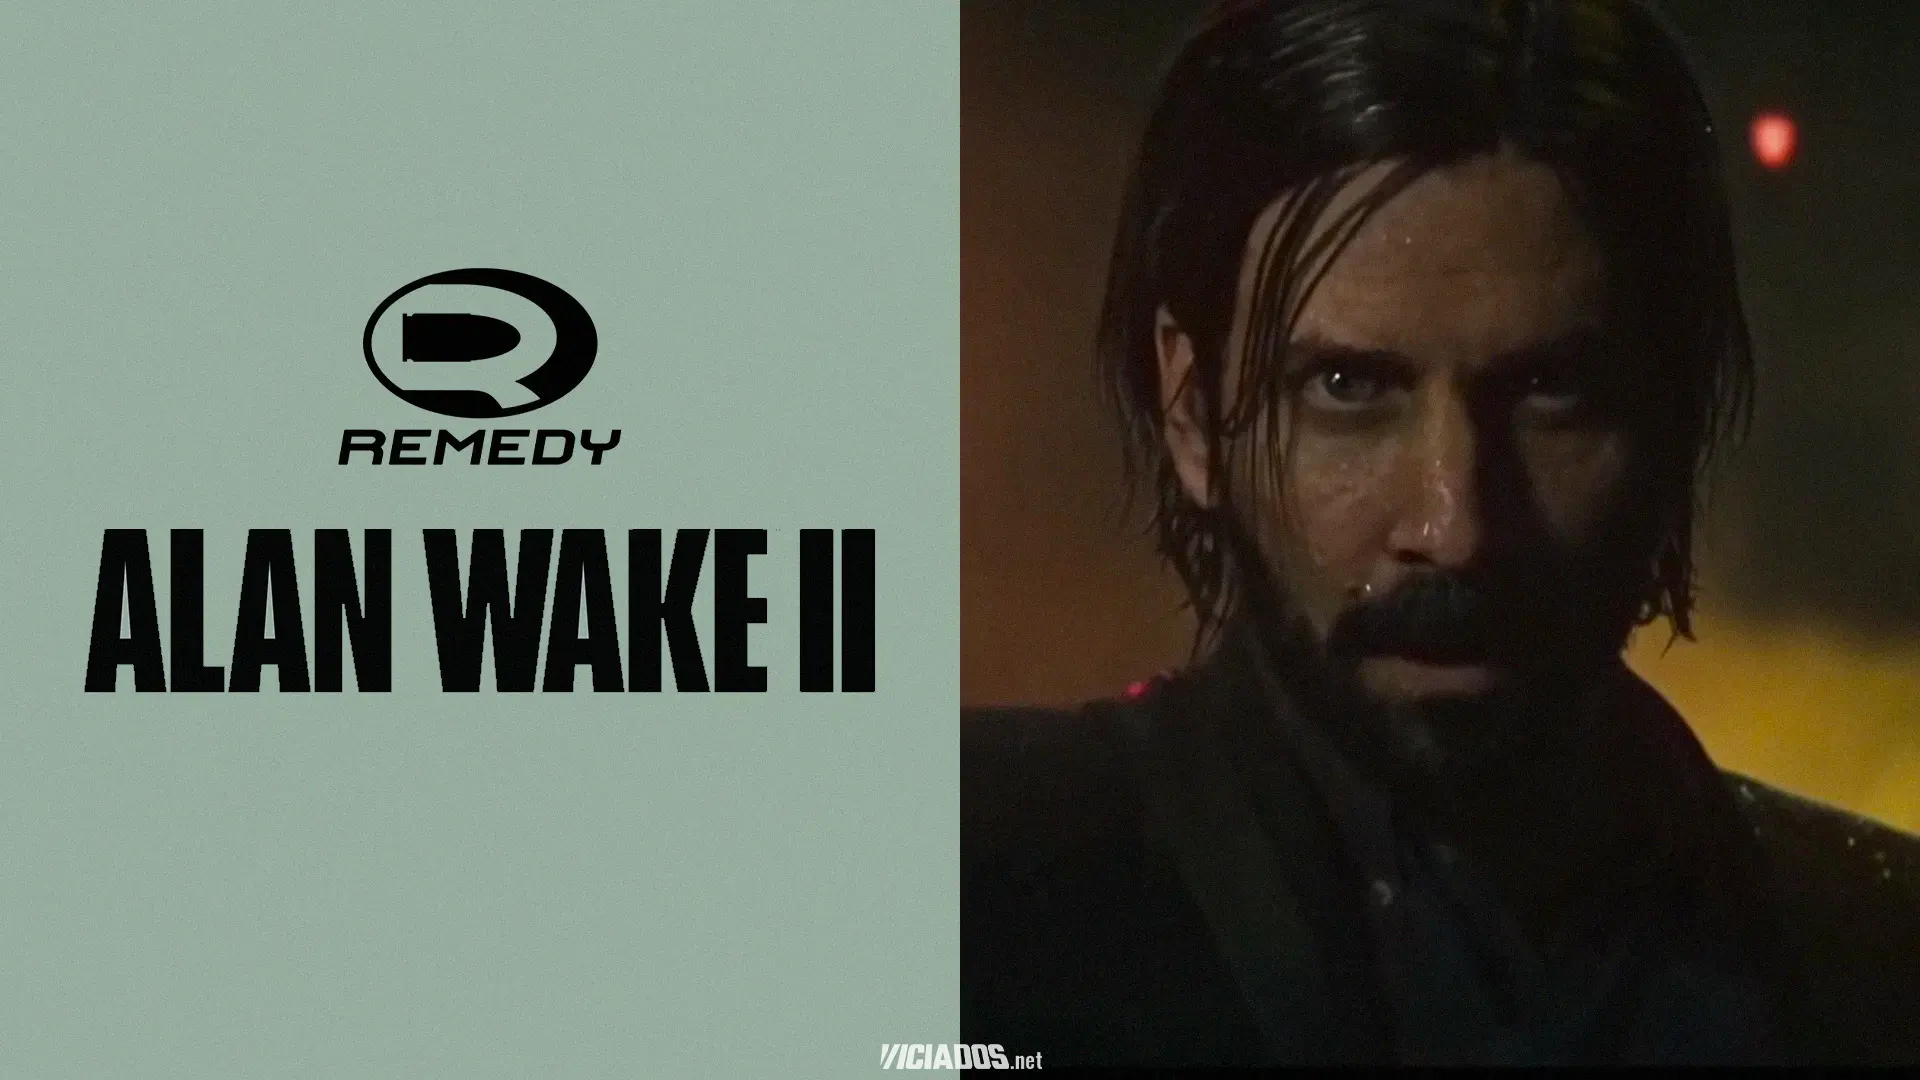 Alan Wake 2 | Insider comenta sobre desenvolvimento do novo título 2023 Viciados